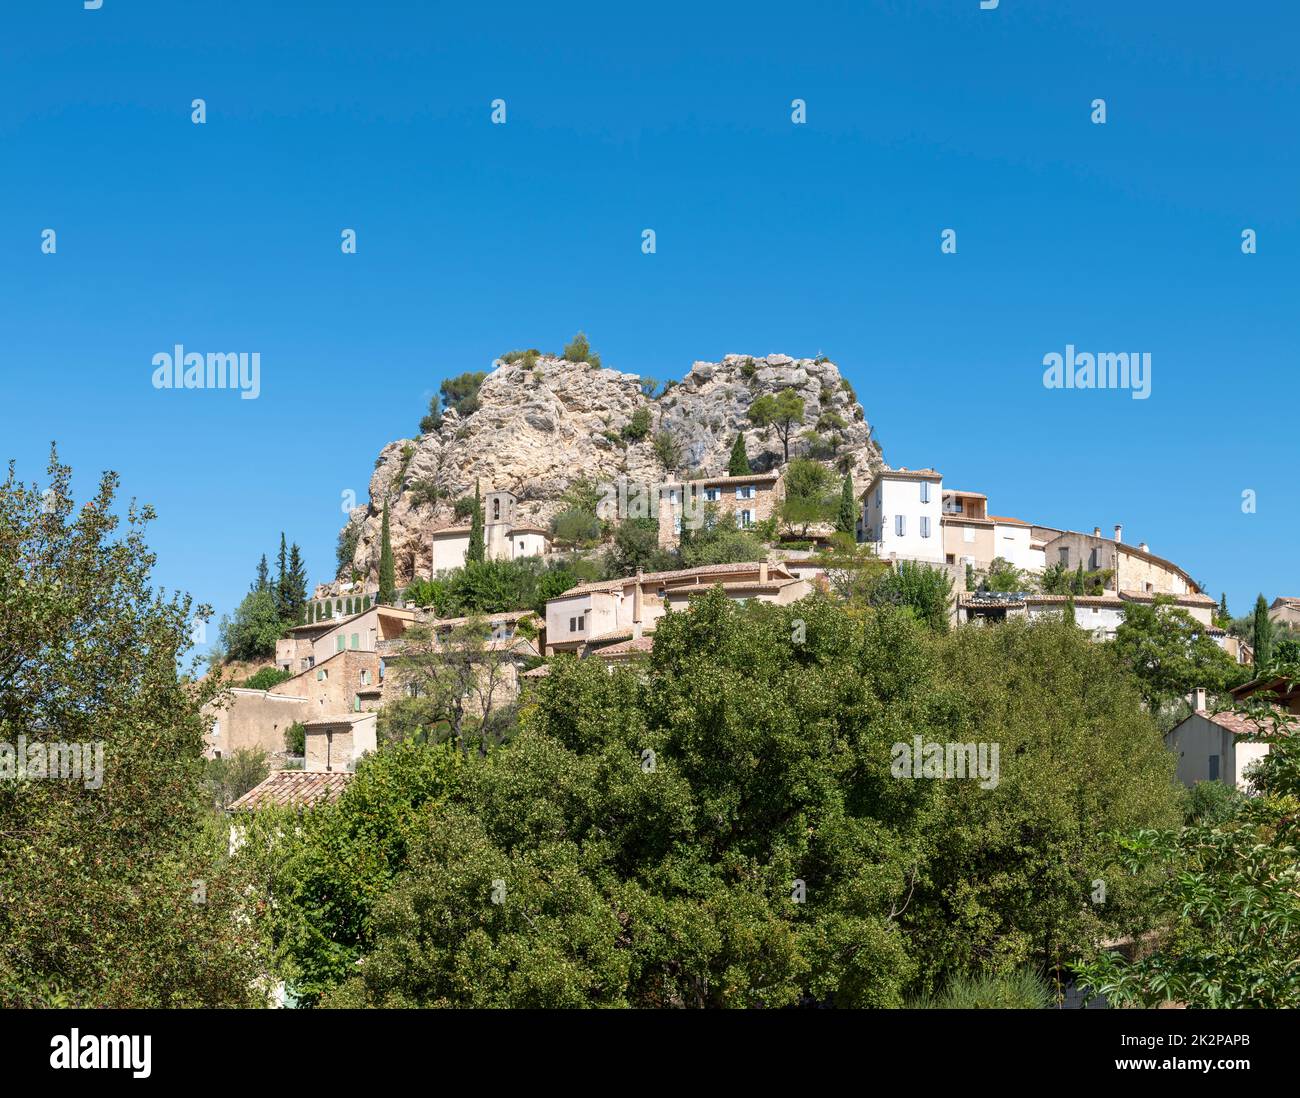 La Roque-Alric, région Provence-Alpes-Côte d'Azur dans le sud-est de la France Banque D'Images